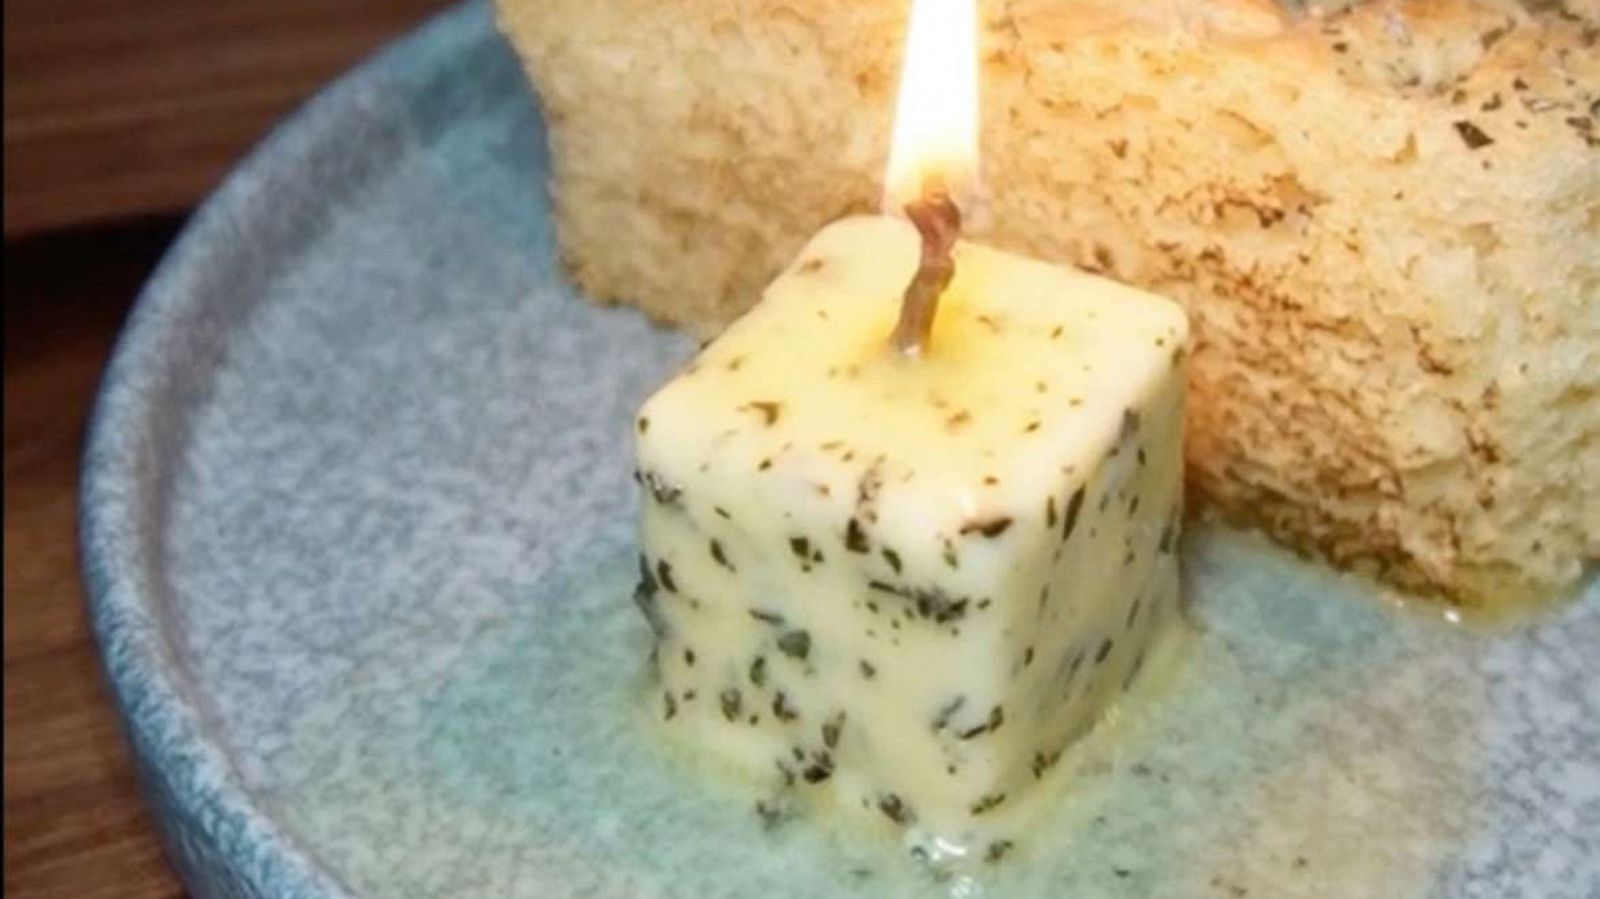 Viral butter candle - Jazz Leaf Eats